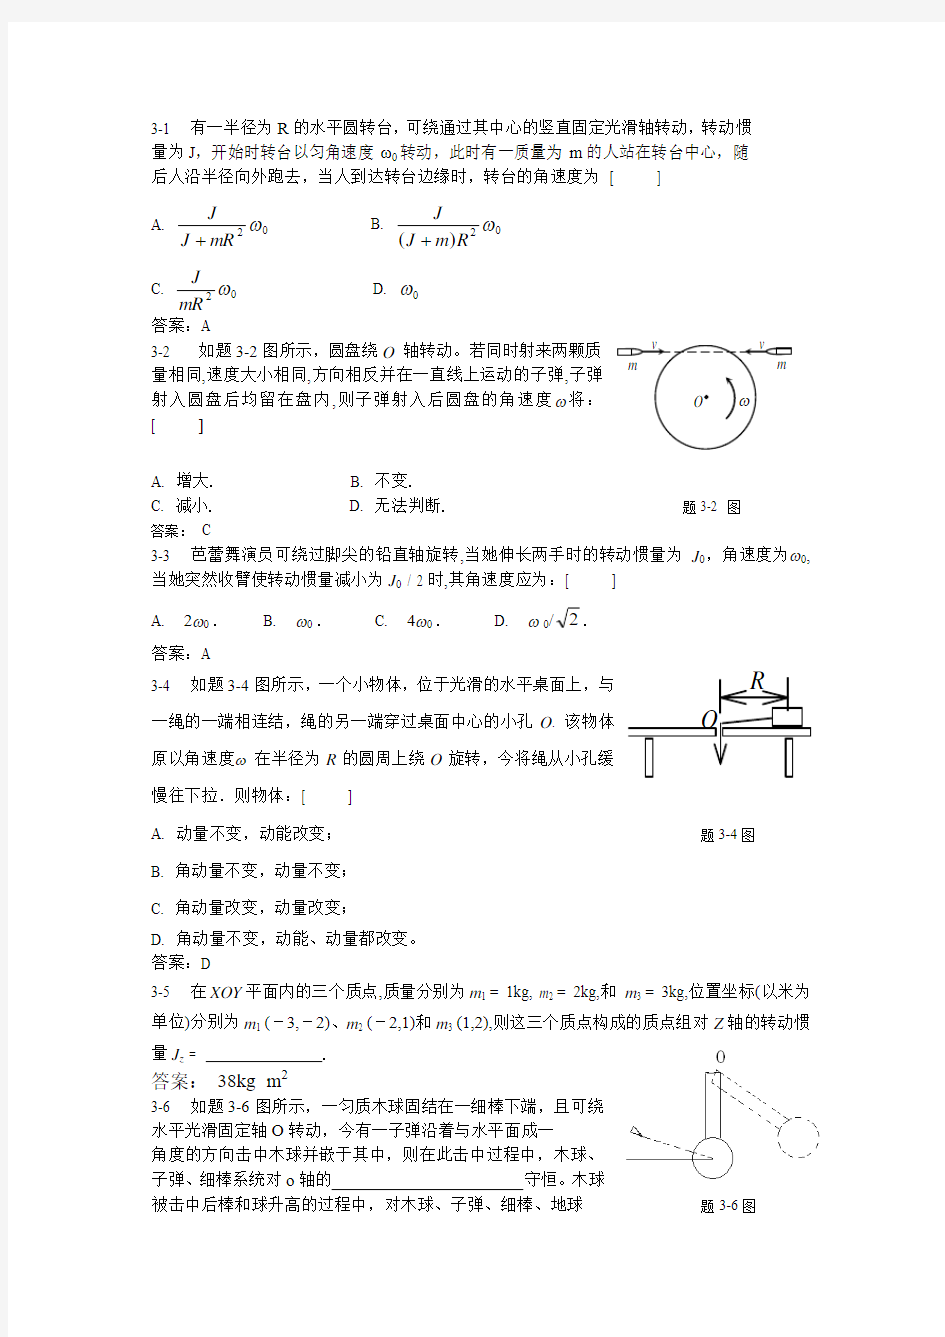 大学物理课后习题答案(上下册全)武汉大学出版社 习题3详解